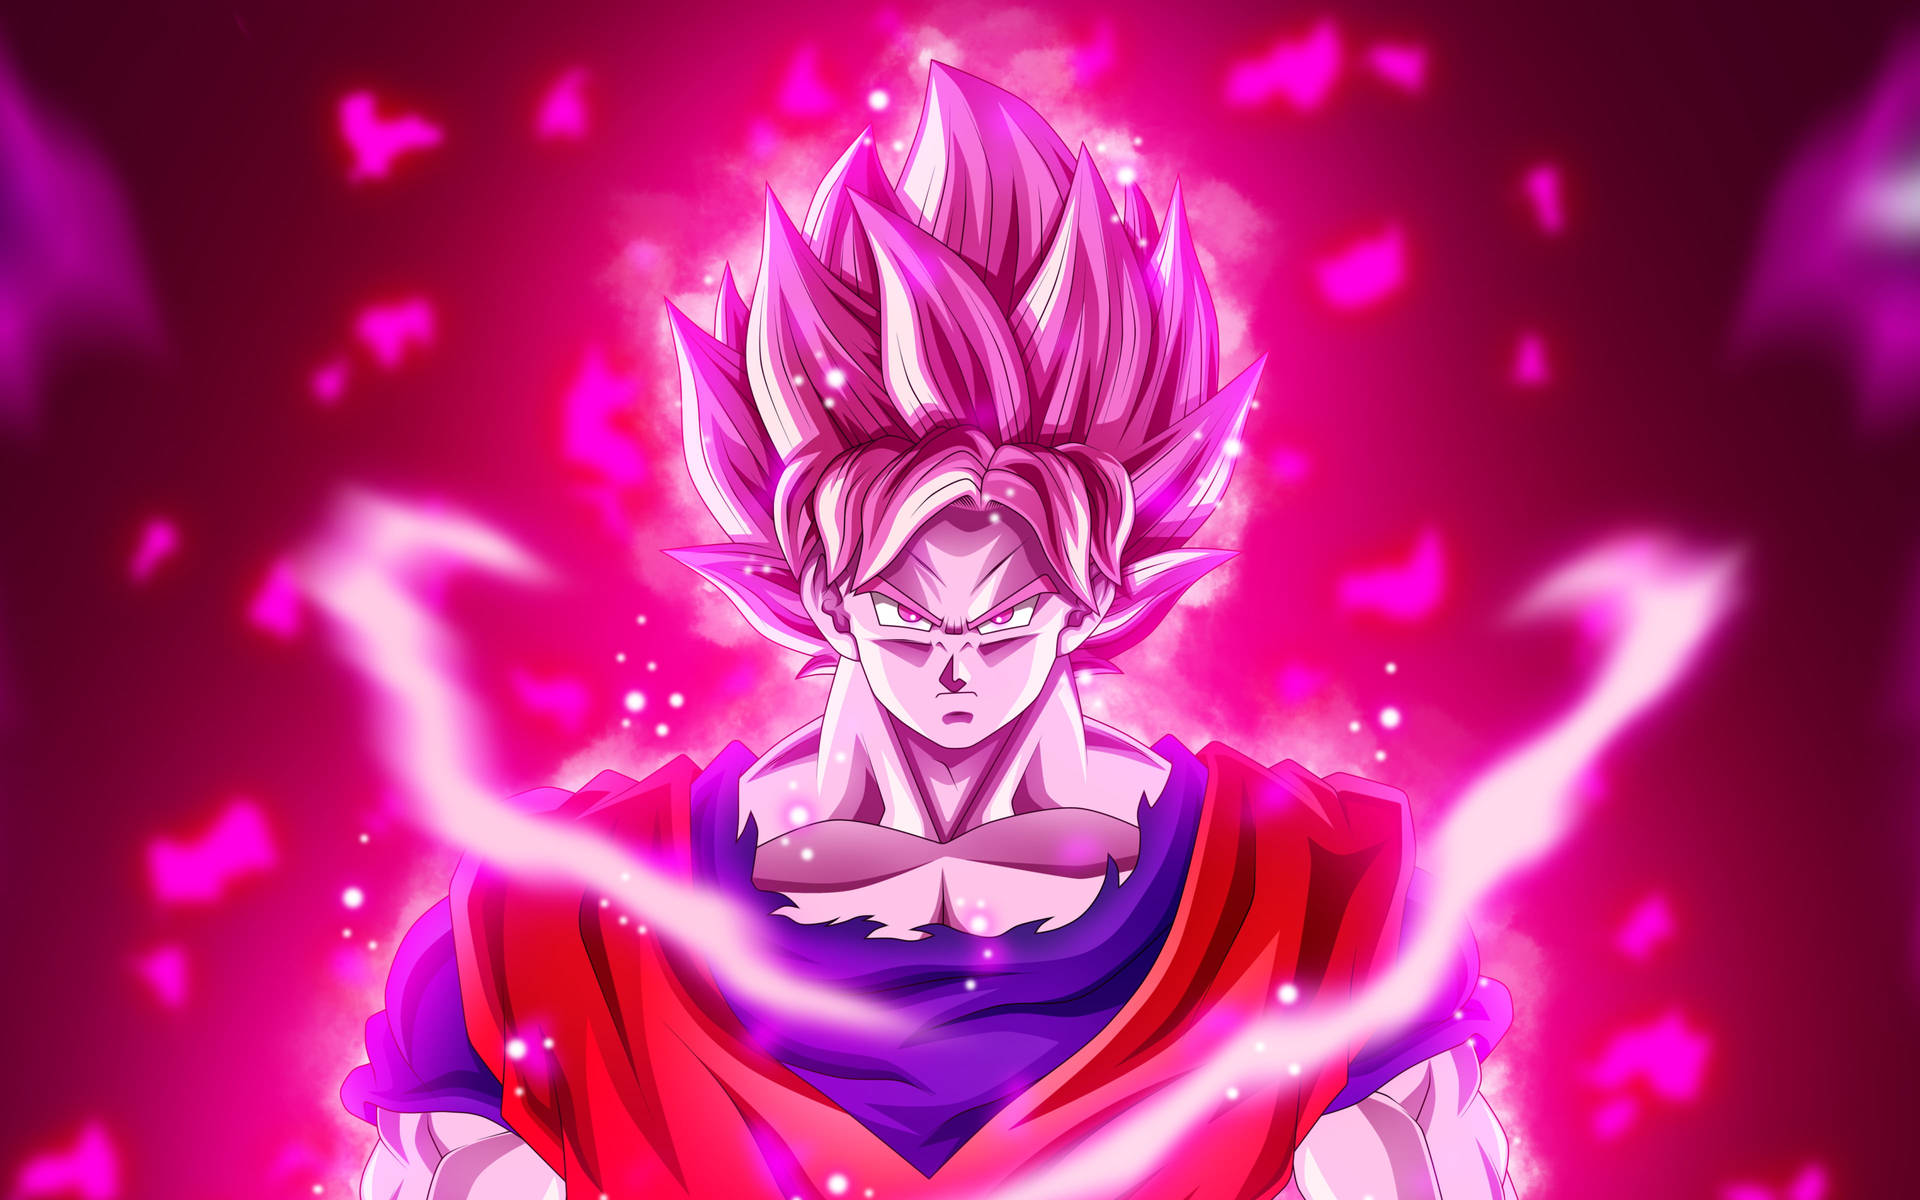 Black Goku Rose 4k Glowing Bright Pink Background